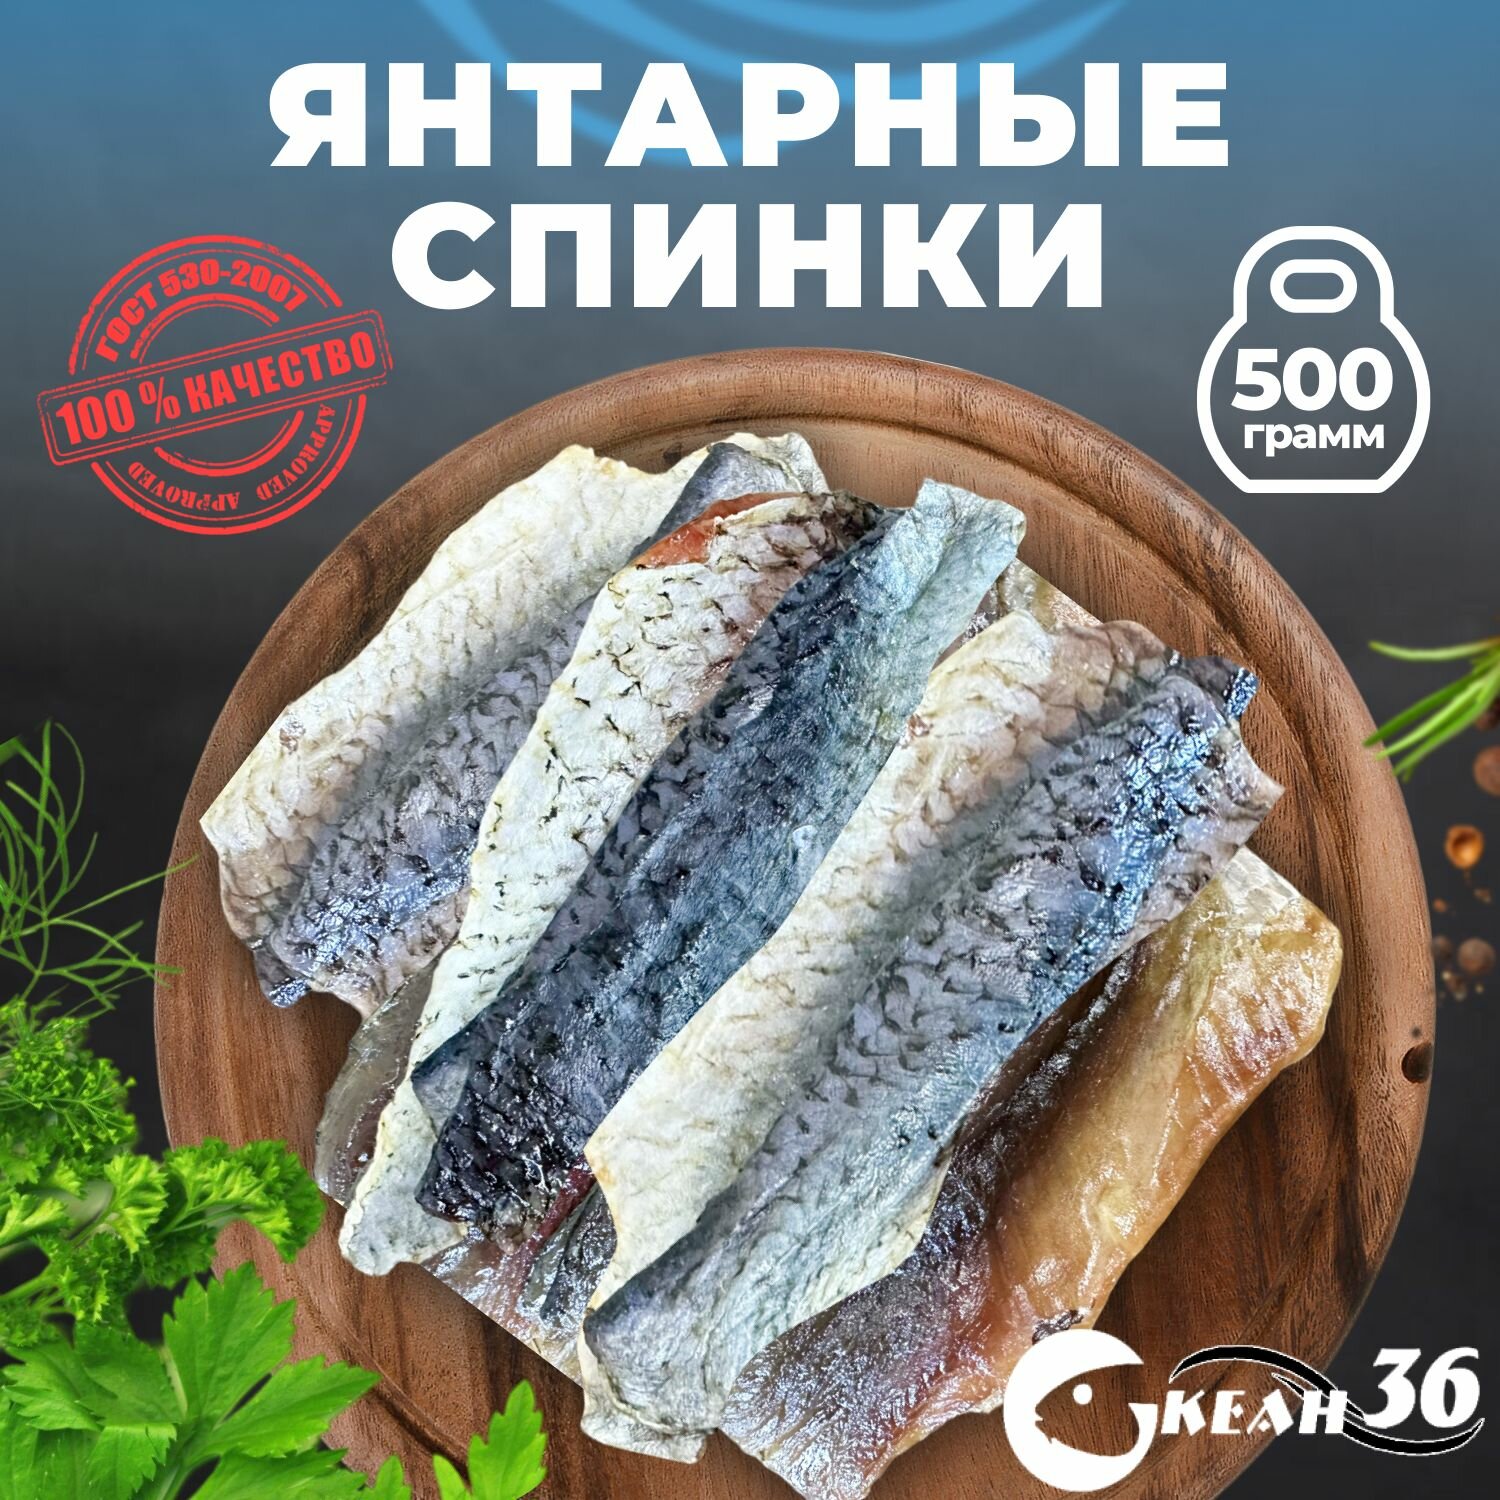 Спинки янтарной рыбки 500 гр / сушеная вяленая рыба / закуска, снеки к пиву